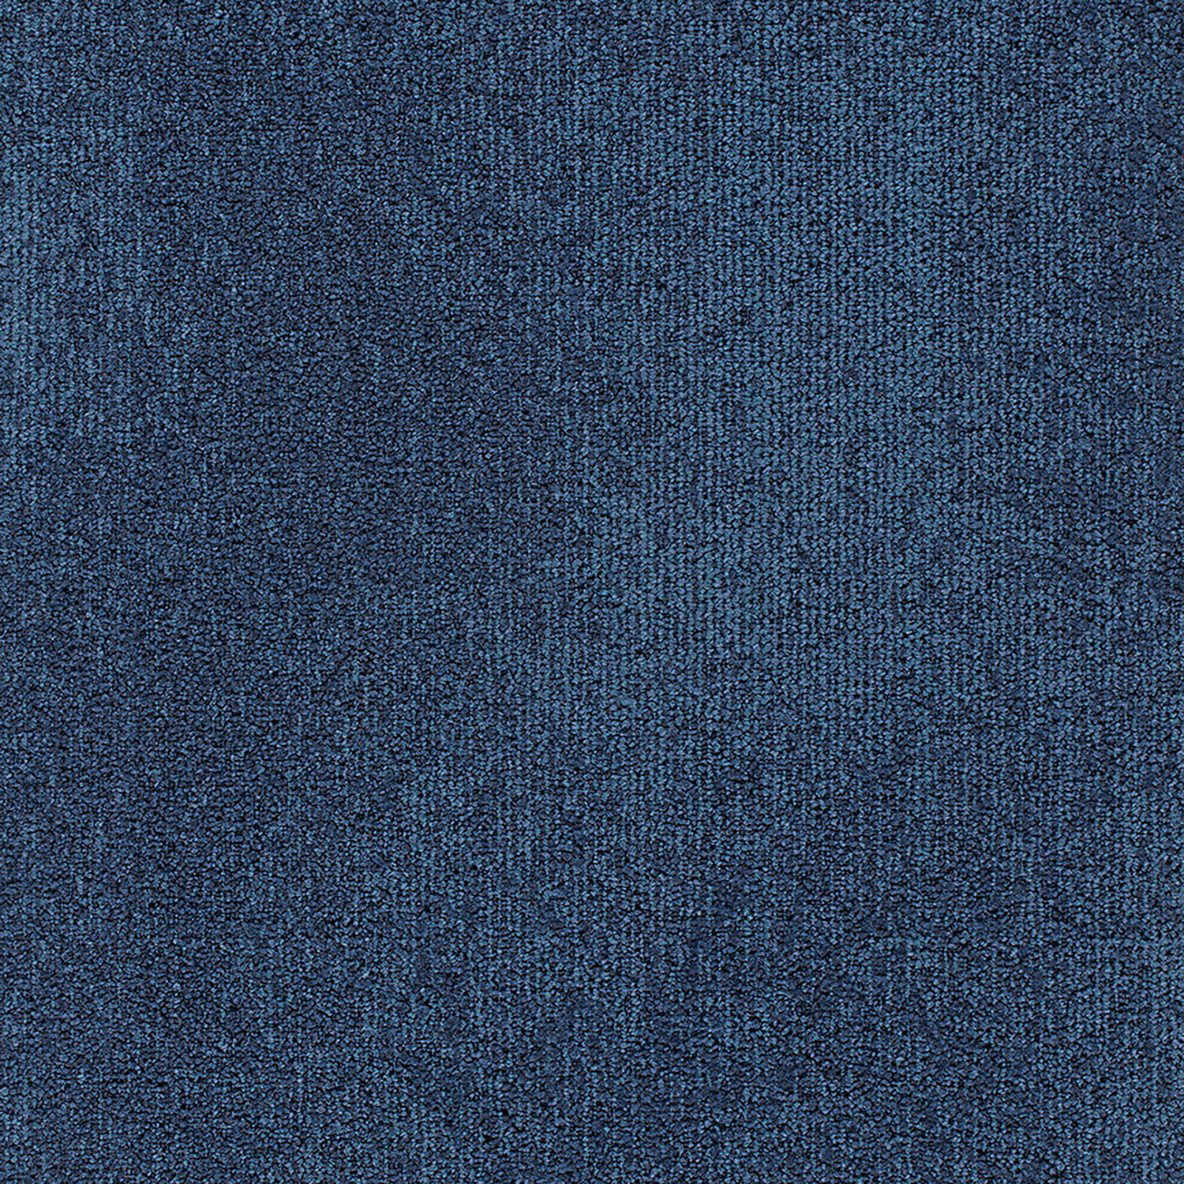 Understatement Commercial Carpet Tile .31 Inch x 50x50 cm per Tile Baltic Blue color close up